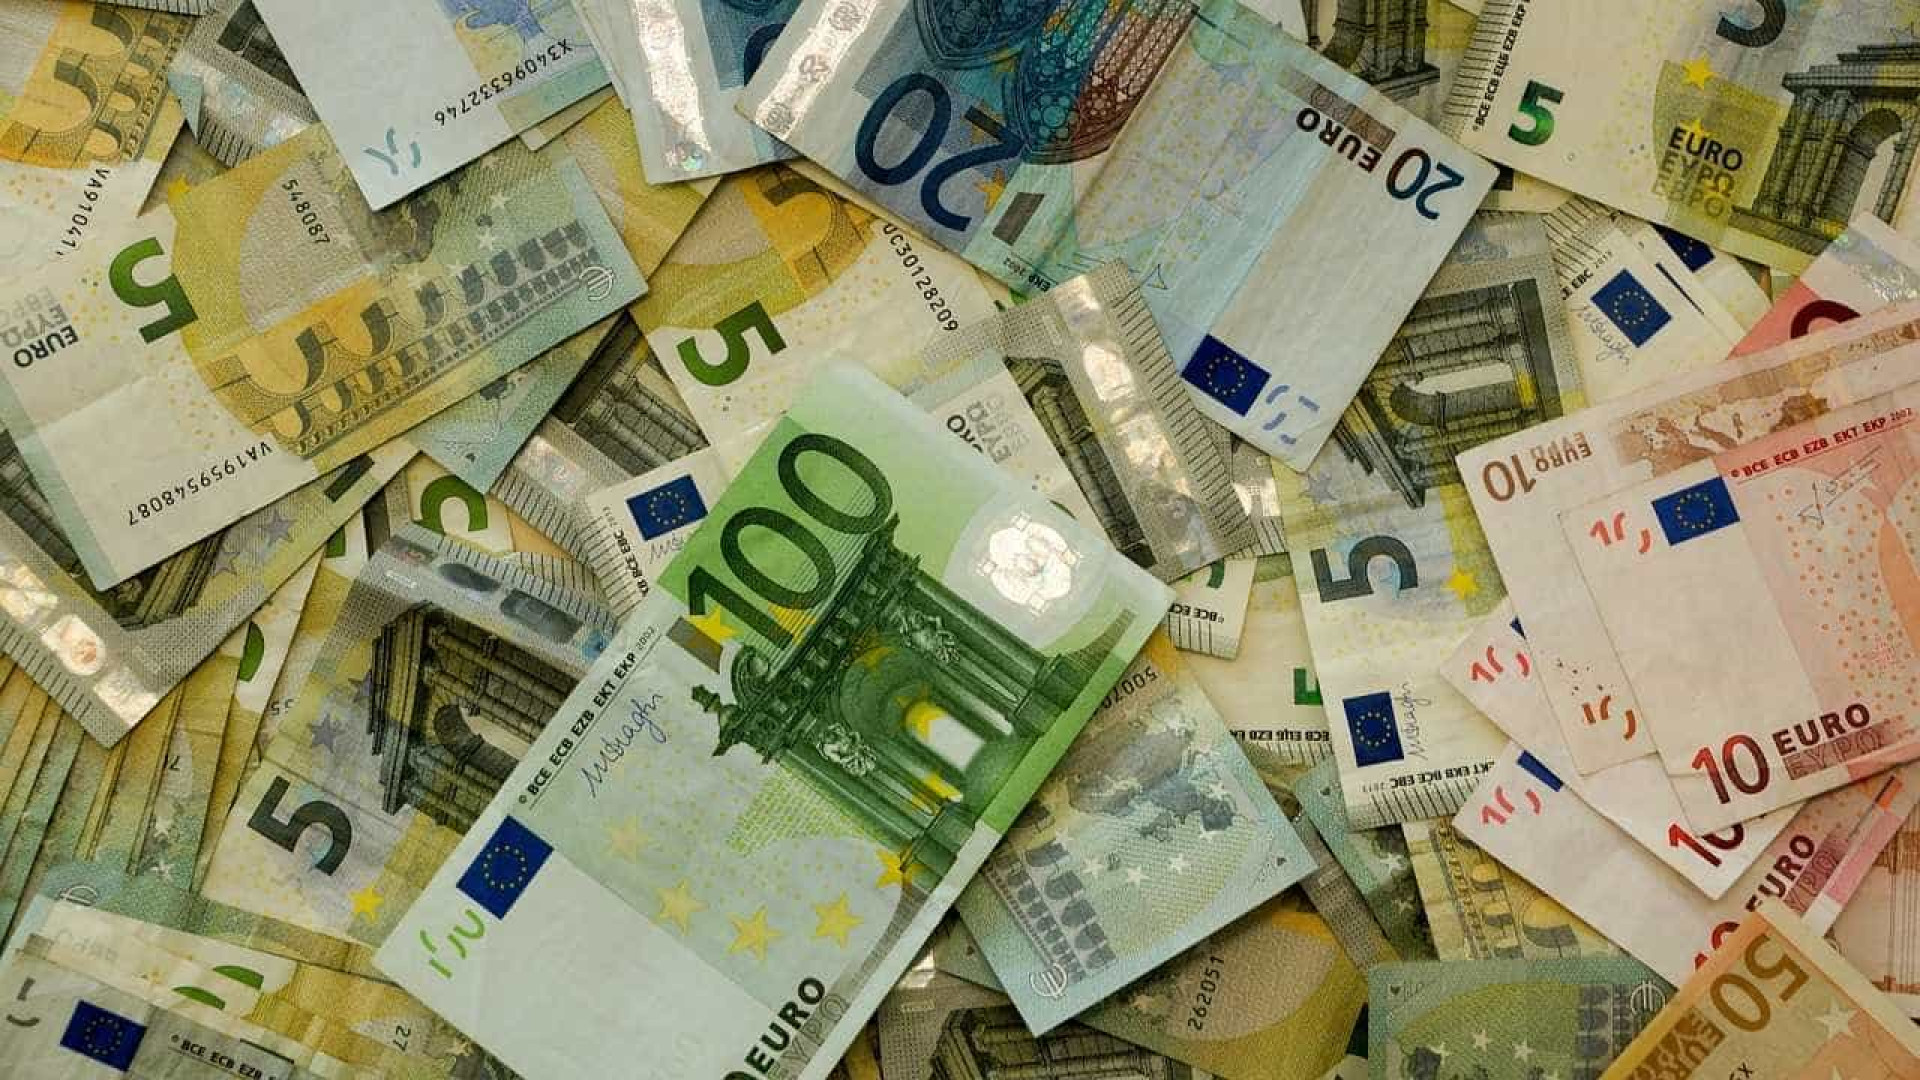 Greve afeta distribuição de dinheiro em espécie na Alemanha